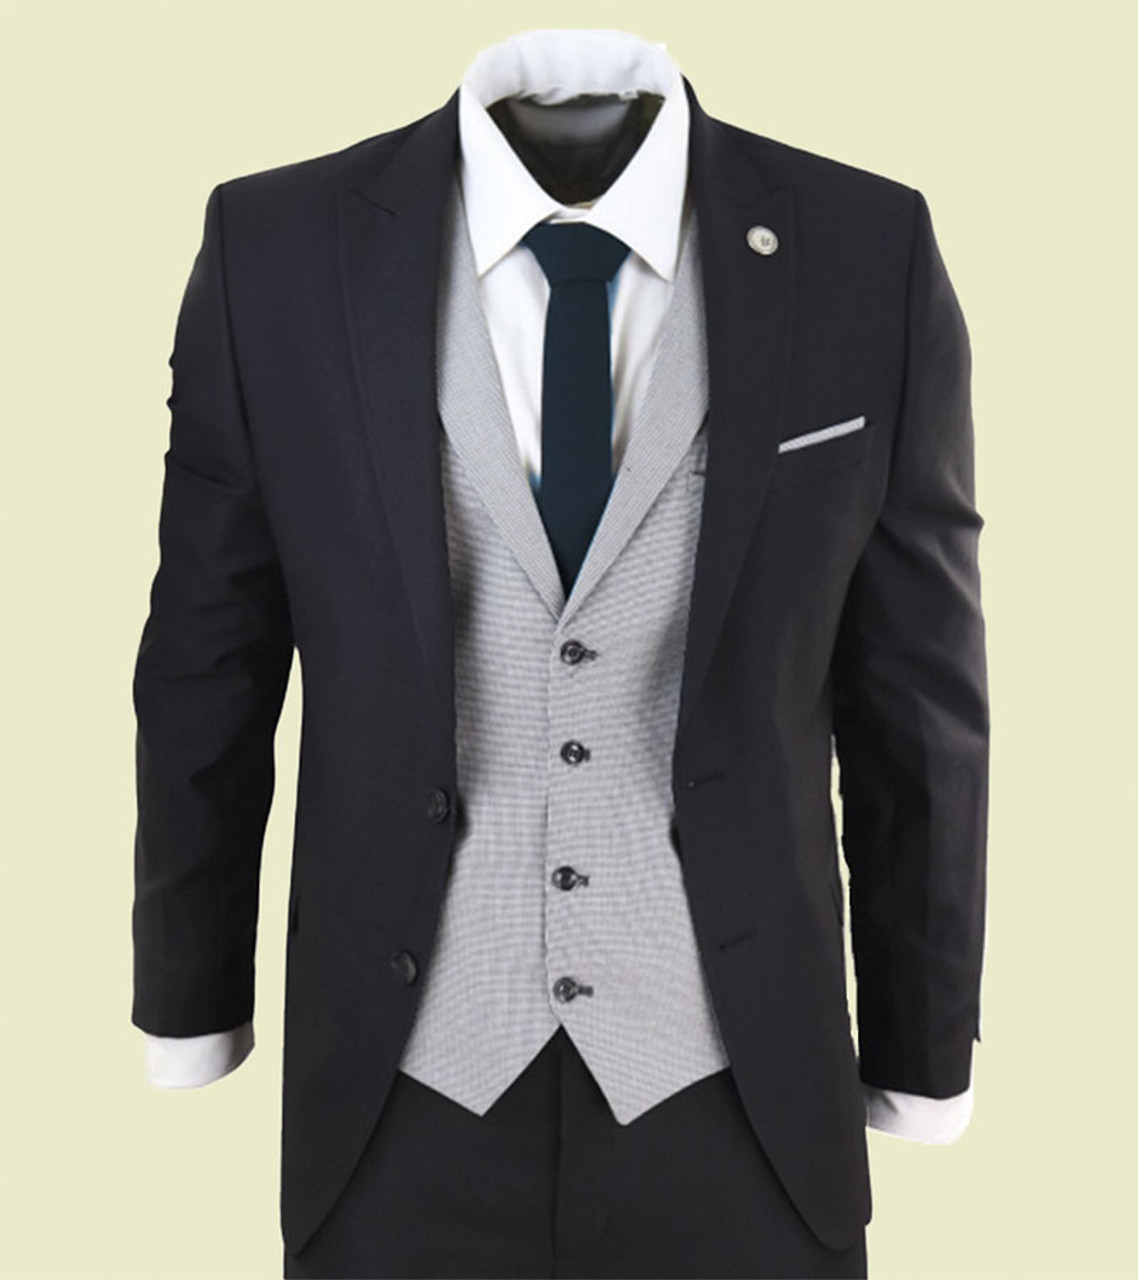 Buy Customize Black Suit V Shape Waistcoat - Free Shipping